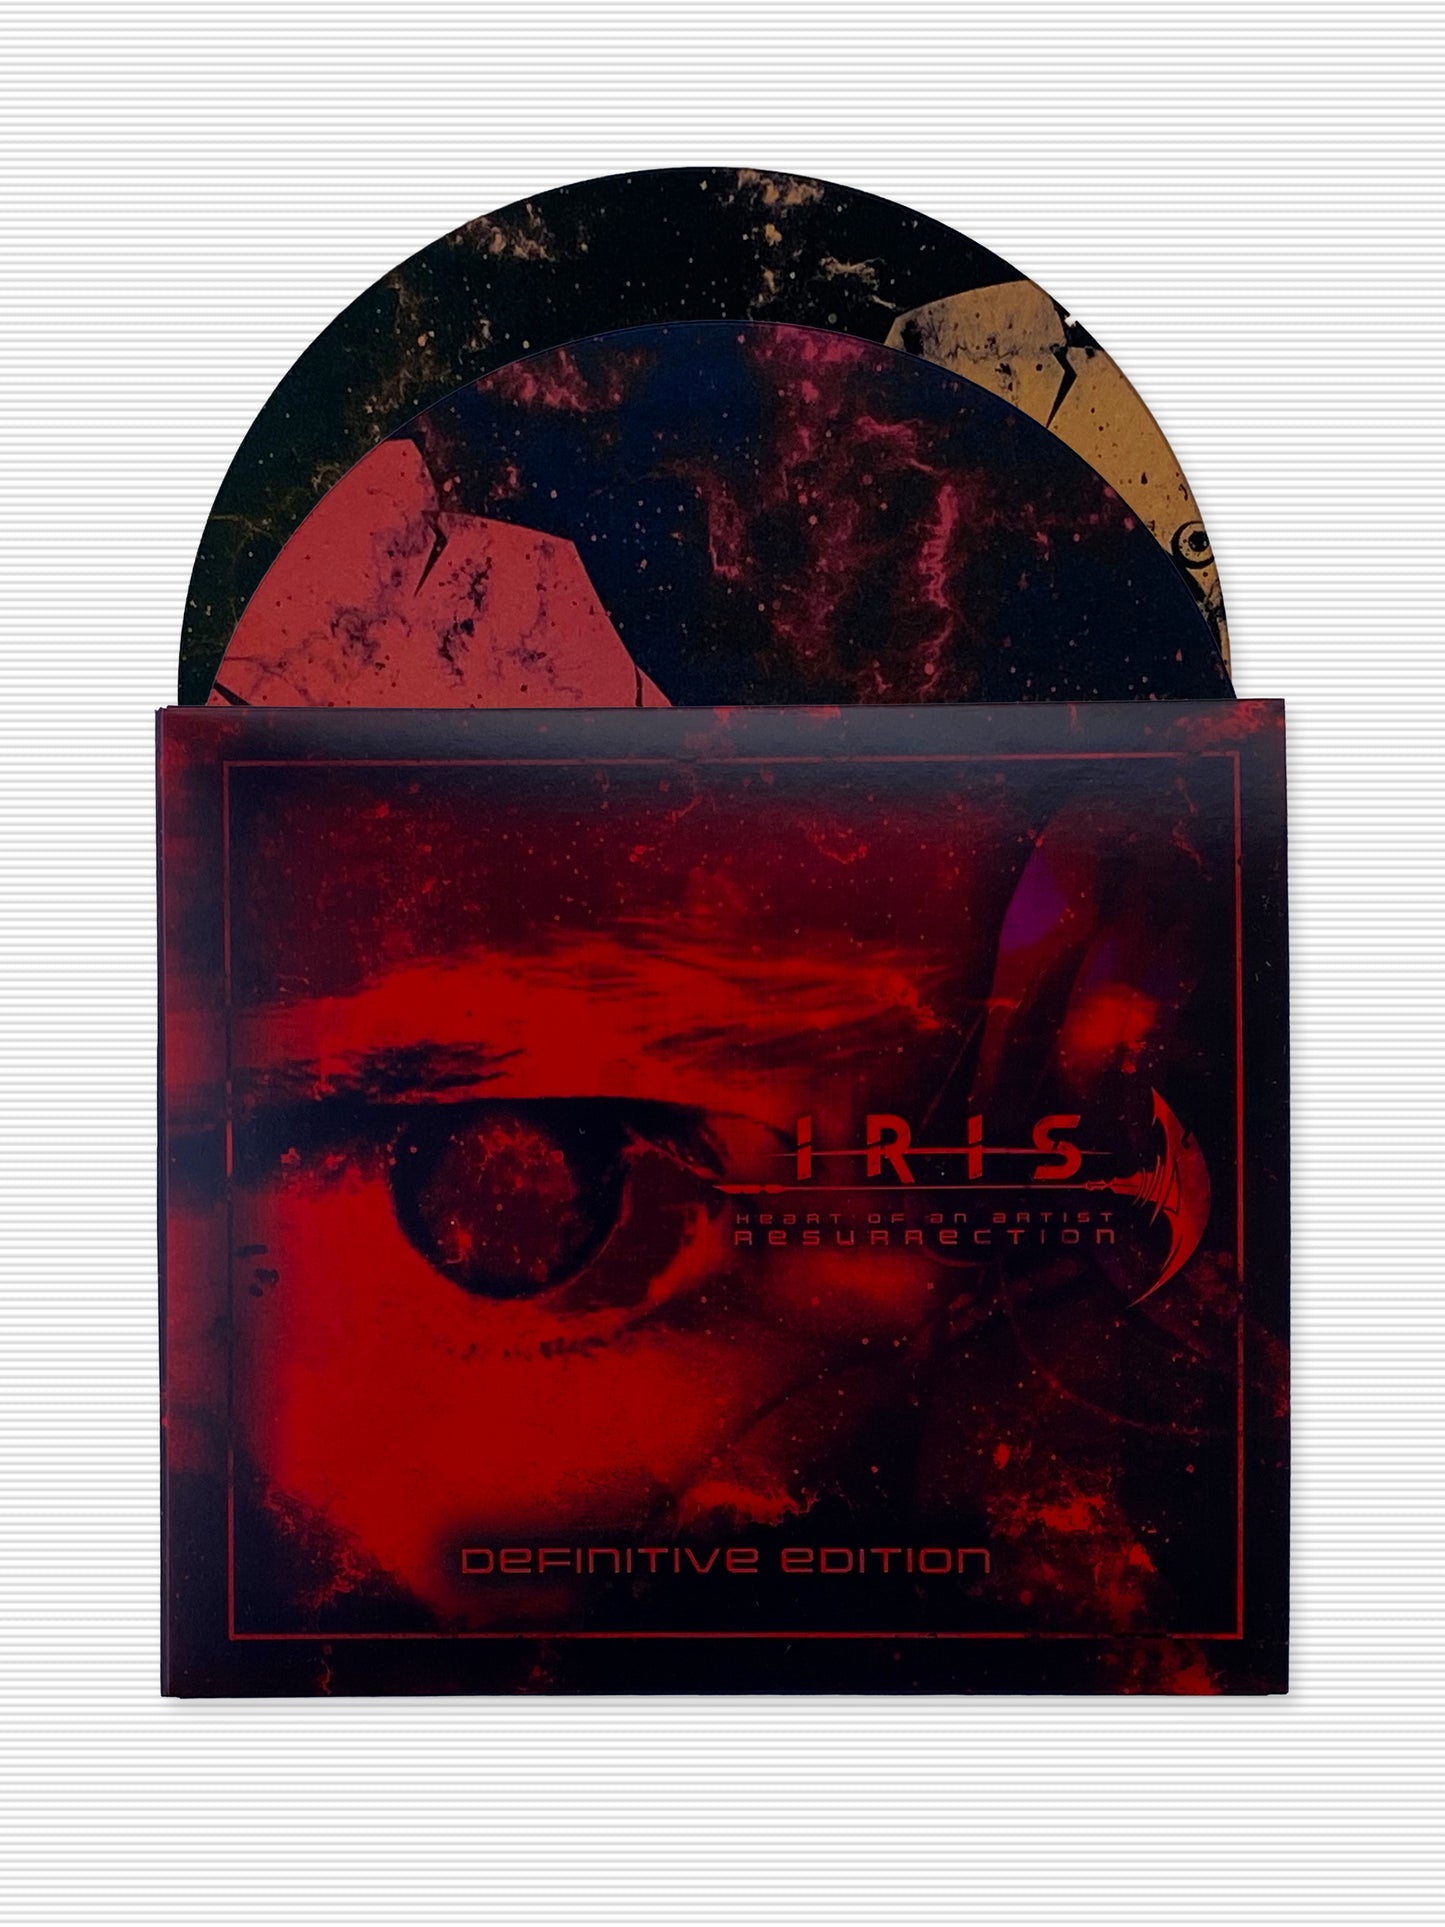 IRIS - Heart of an Artist Resurrection Definitive Edition CD